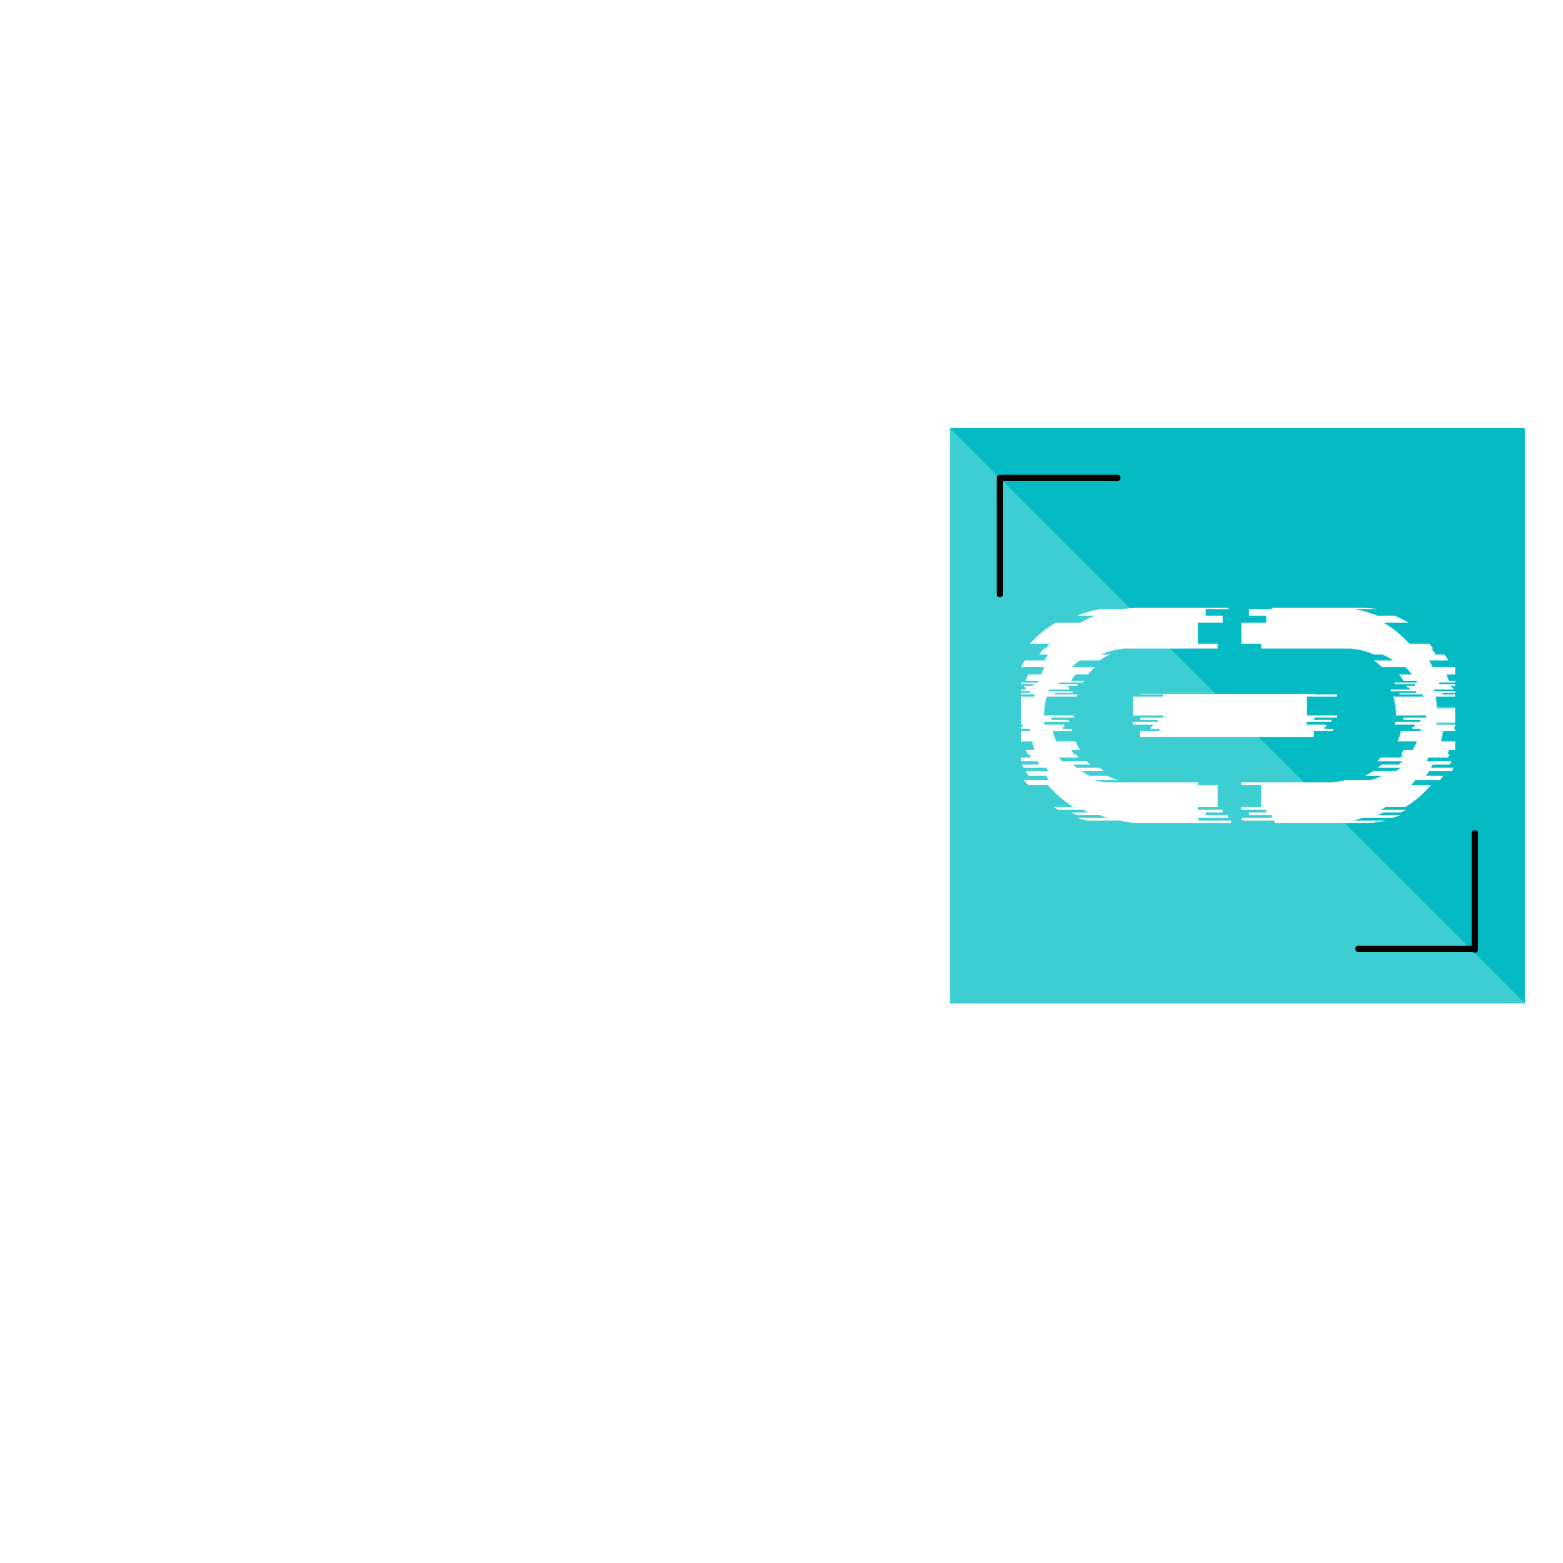 Chain Records